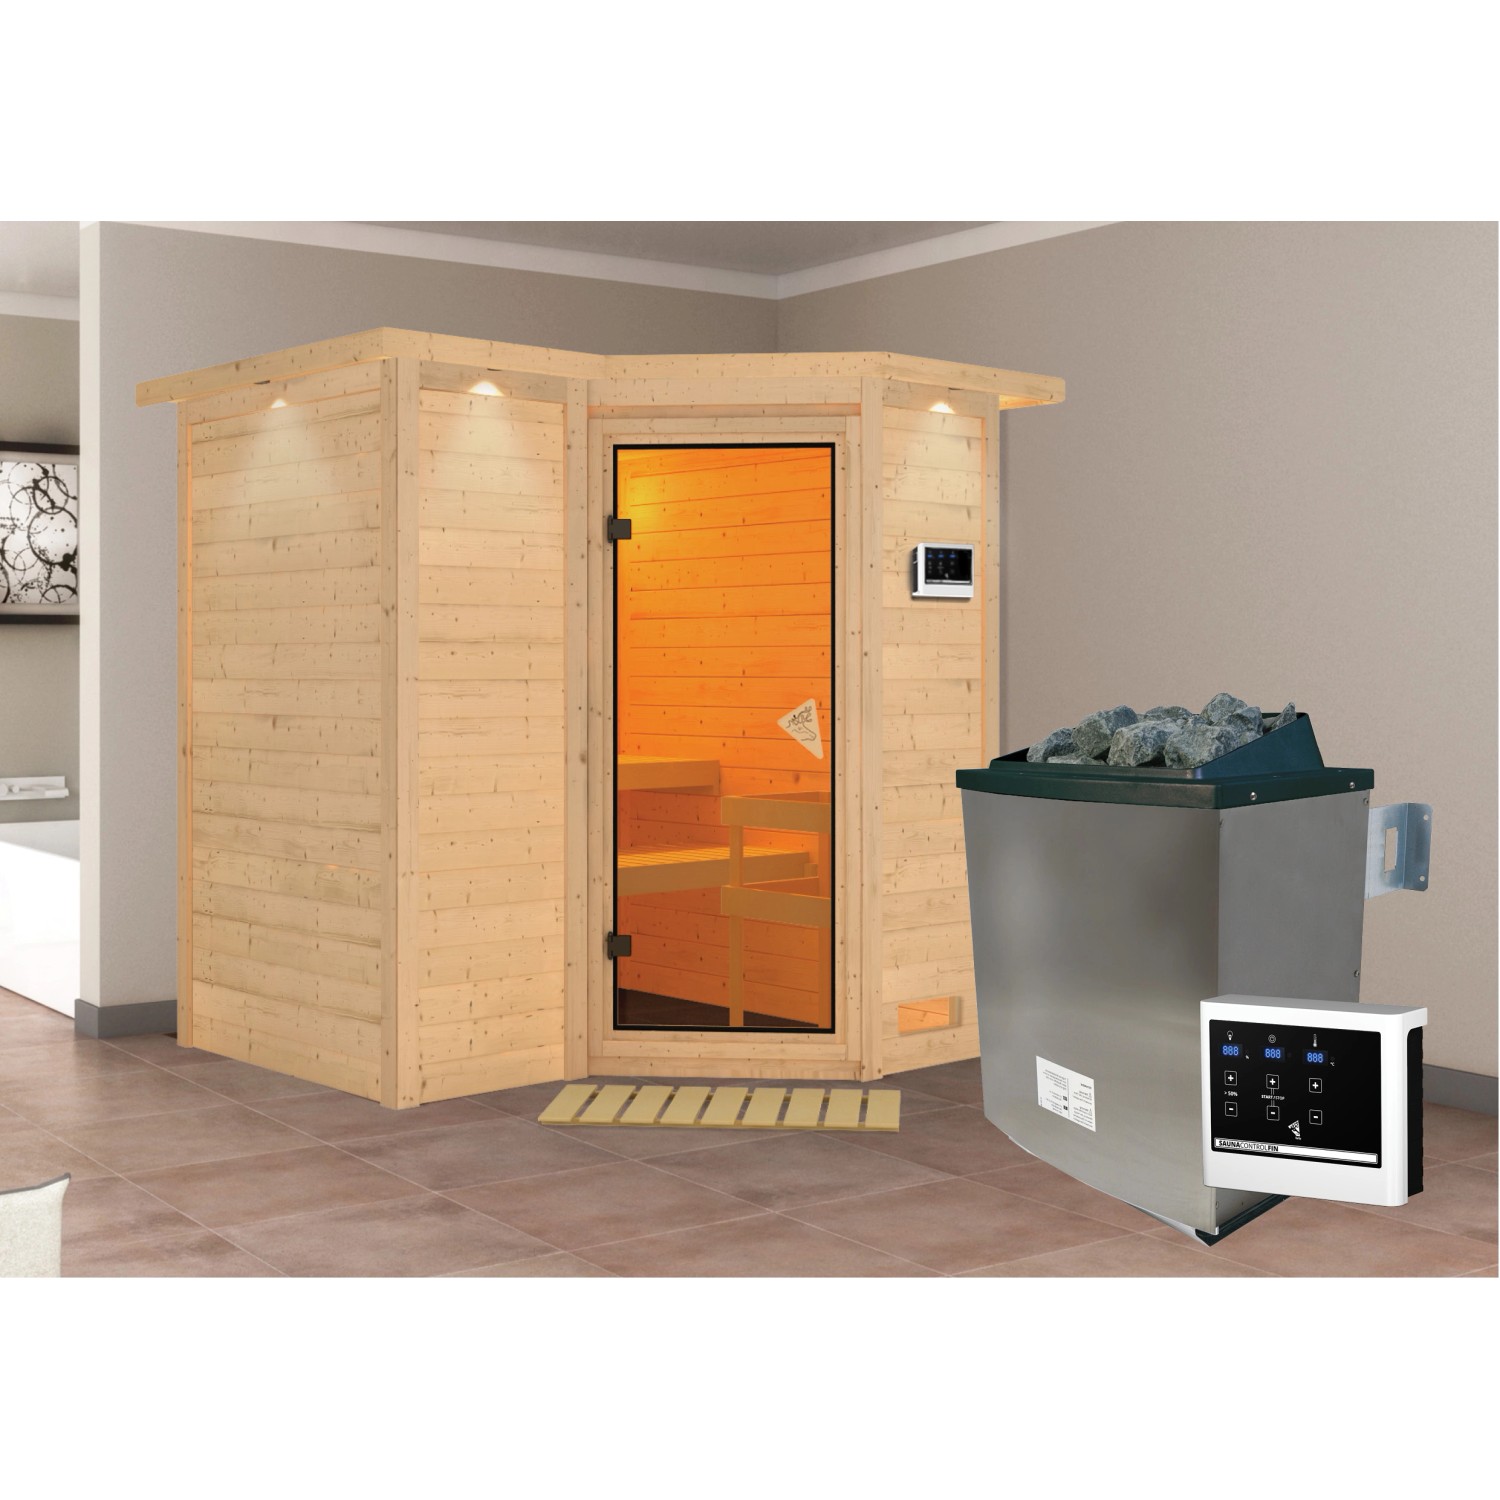 Woodfeeling Sauna Steena 1 inkl. Edelstahl-Ofen 9 kW mit ext. Steuerung, Da günstig online kaufen